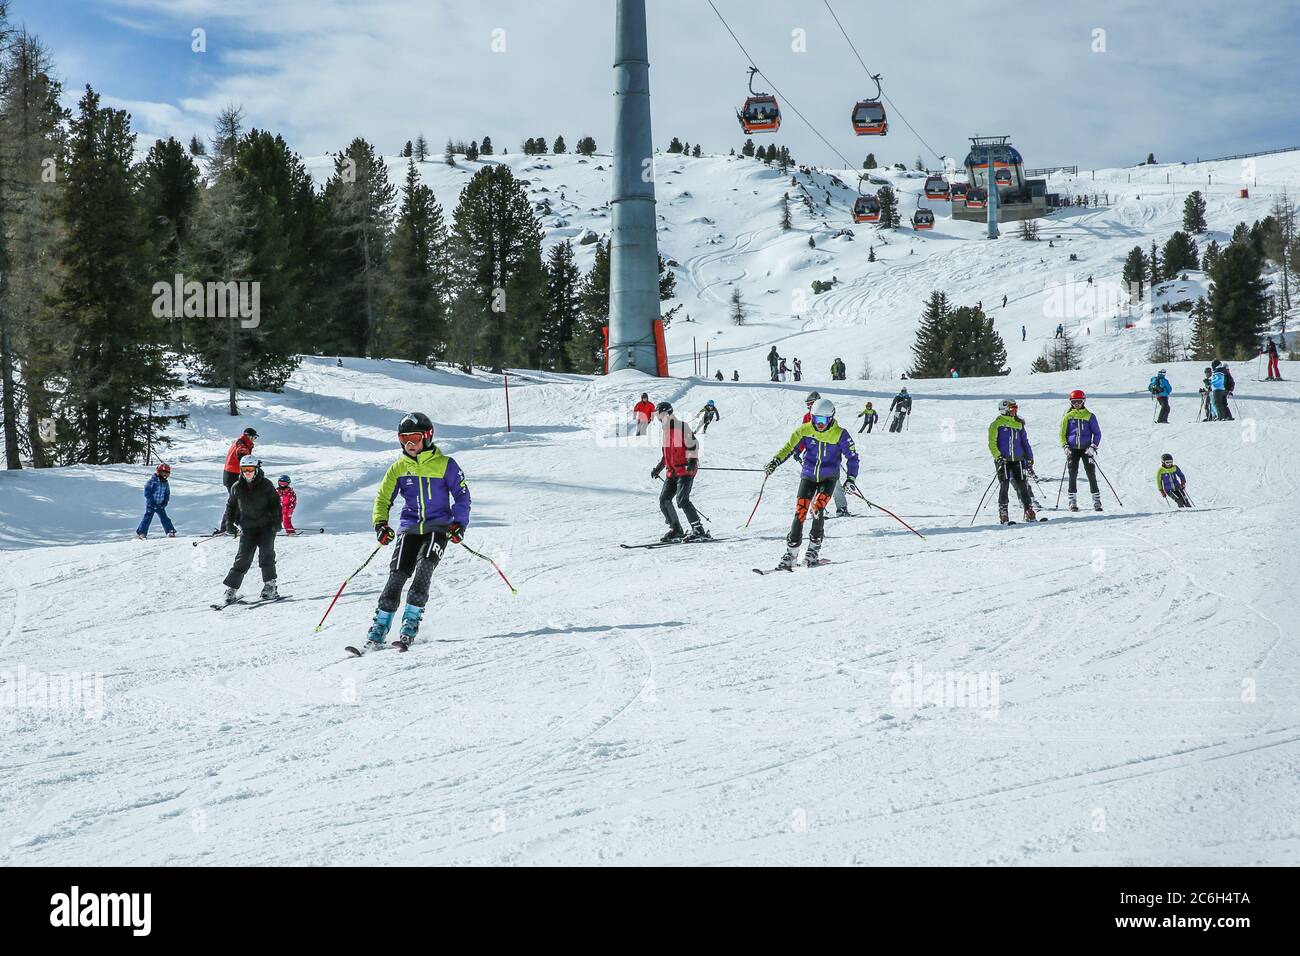 KREISCHBERG, MURAU, ÖSTERREICH - 15. MÄRZ 2017: Viele Skifahrer fahren in  den Alpen an sonnigen Wintertagen. Seilbahn in den Bergen Stockfotografie -  Alamy